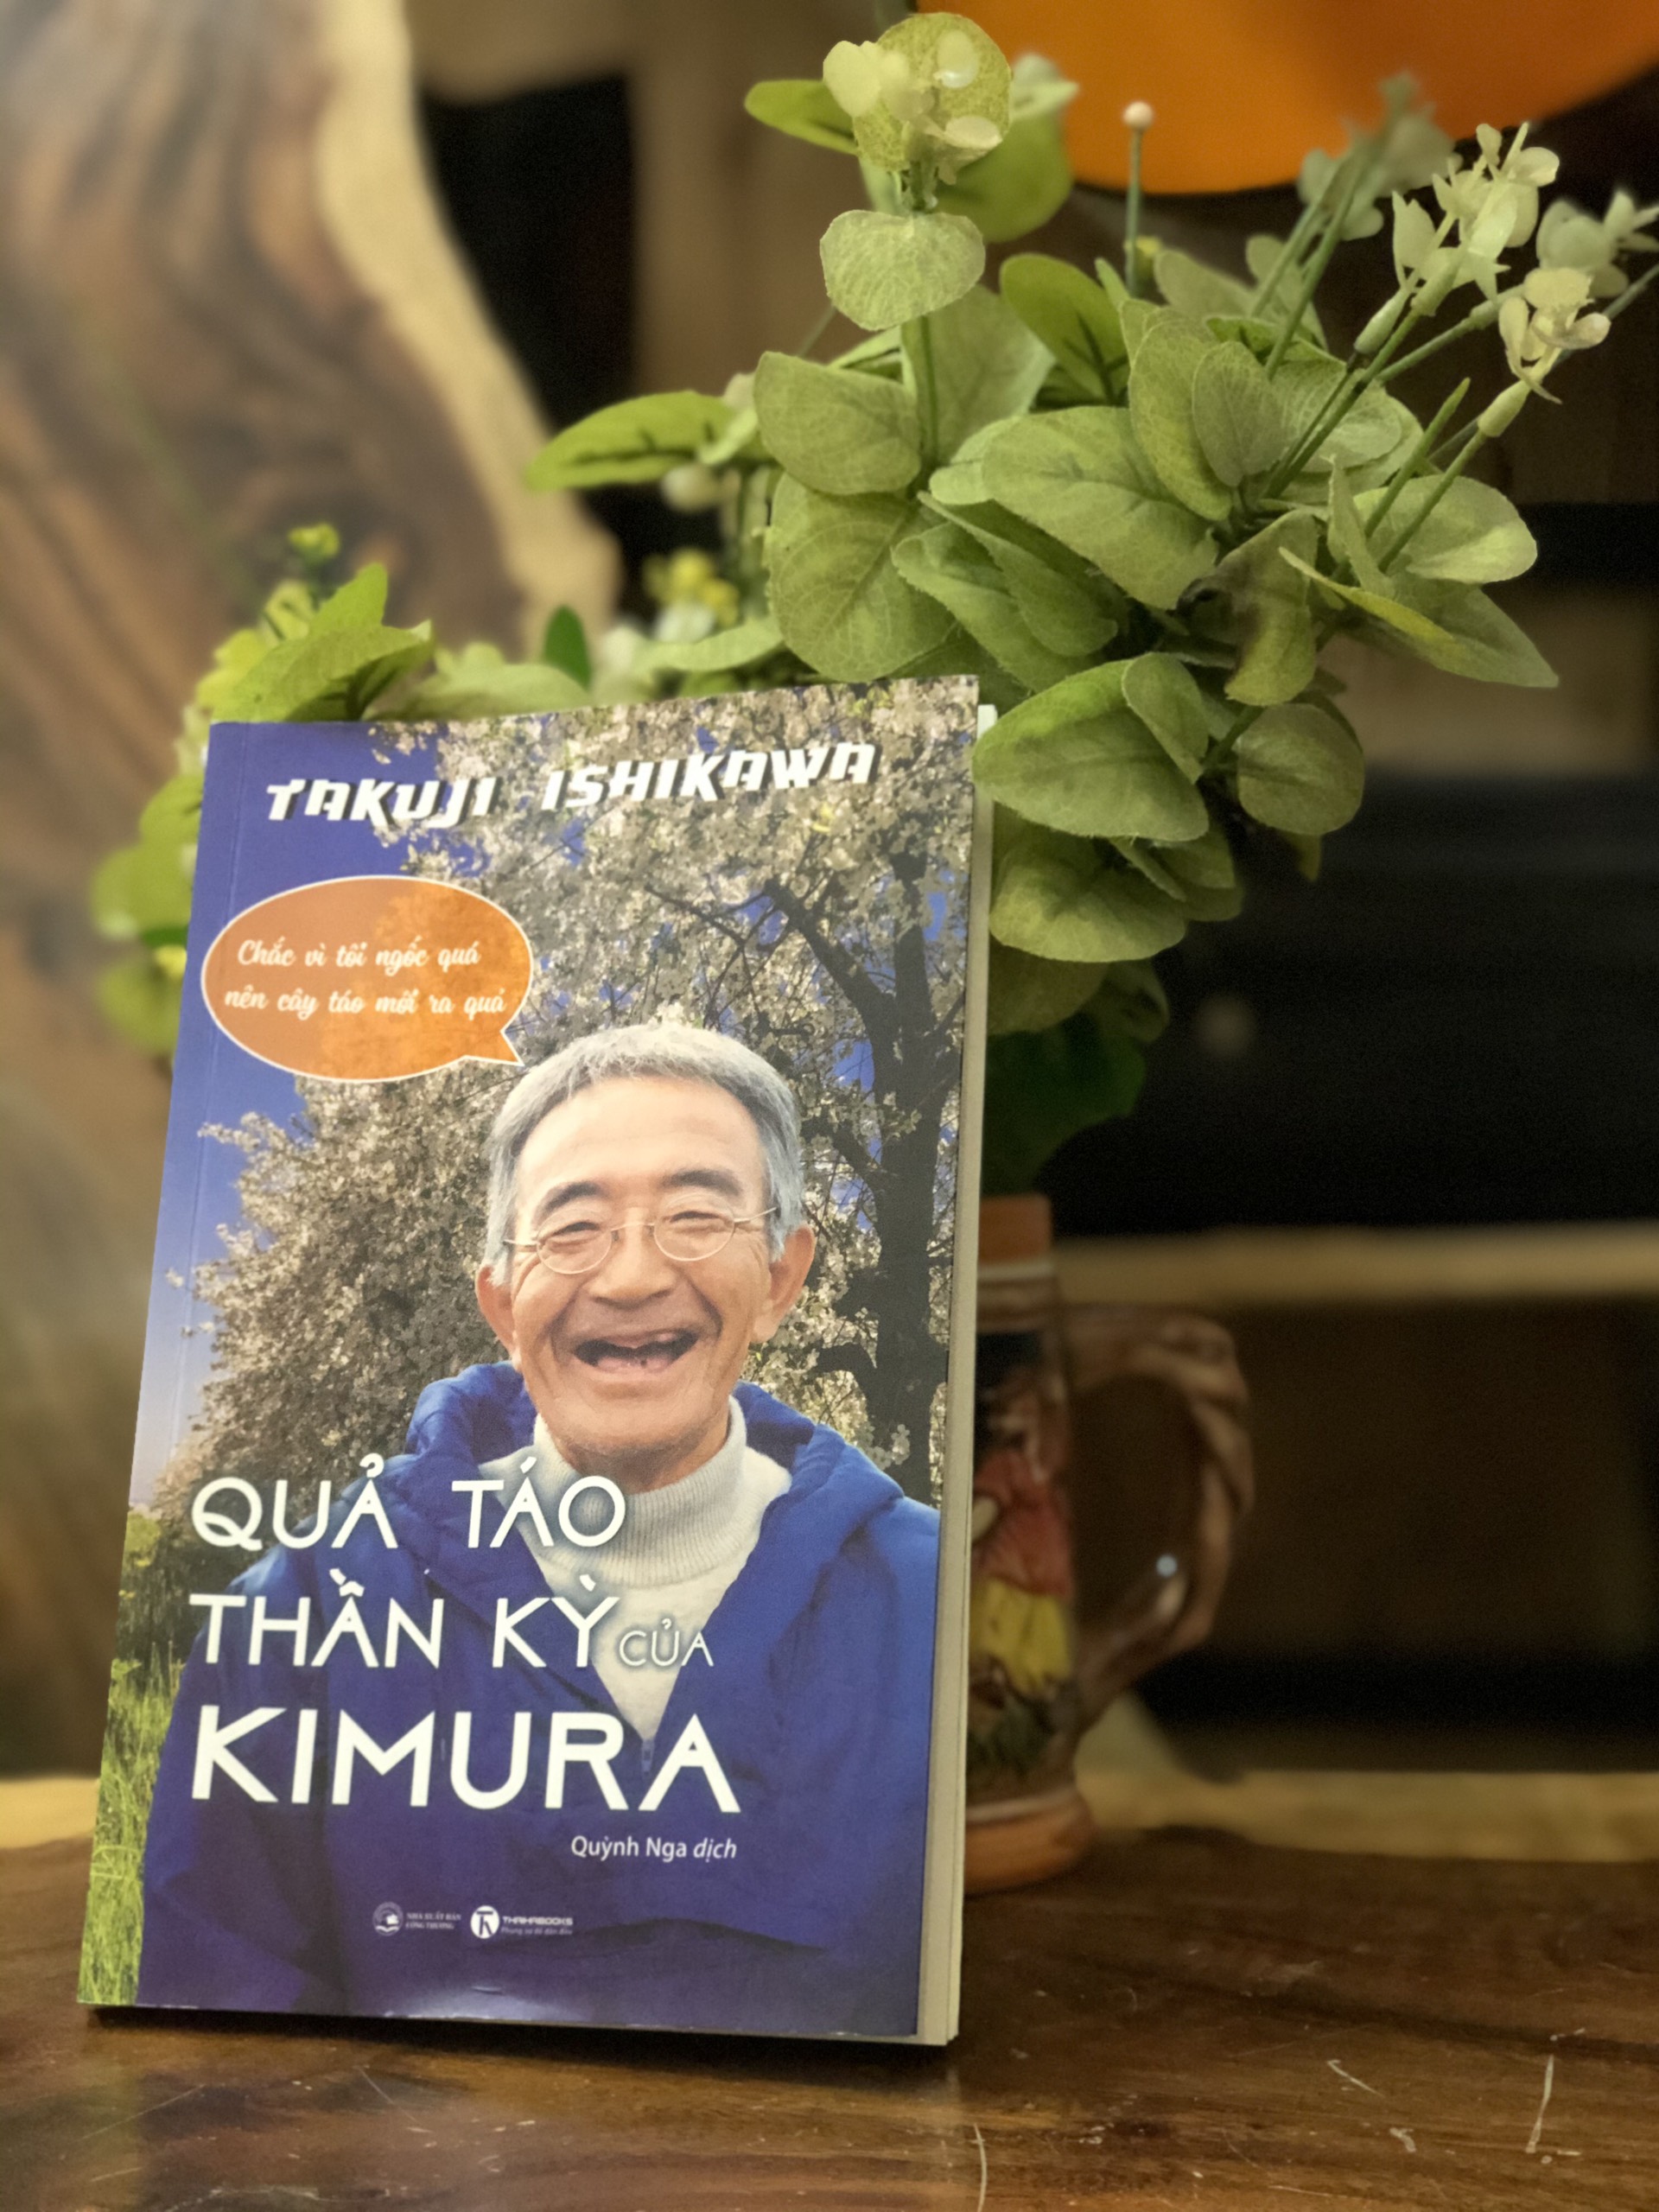 Sách hay nên đọc] – Quả táo thần kì của Kimura | Ymagazine